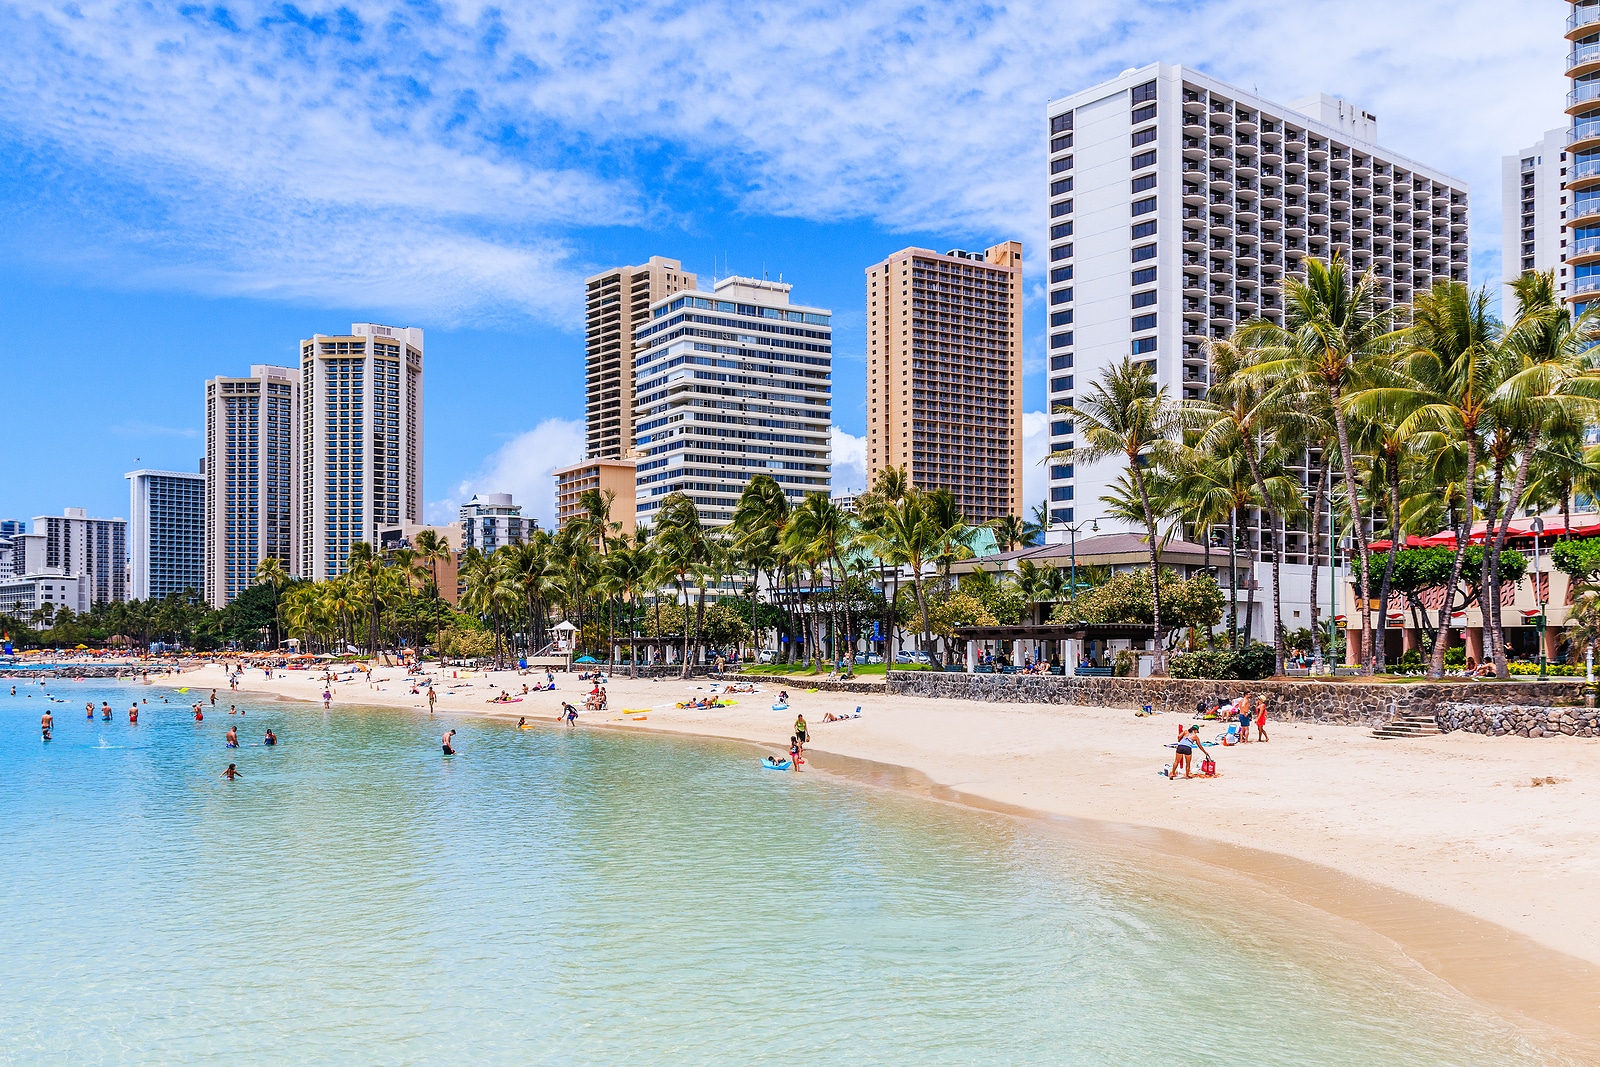 Waikiki Beach in Honolulu, Hawaii.